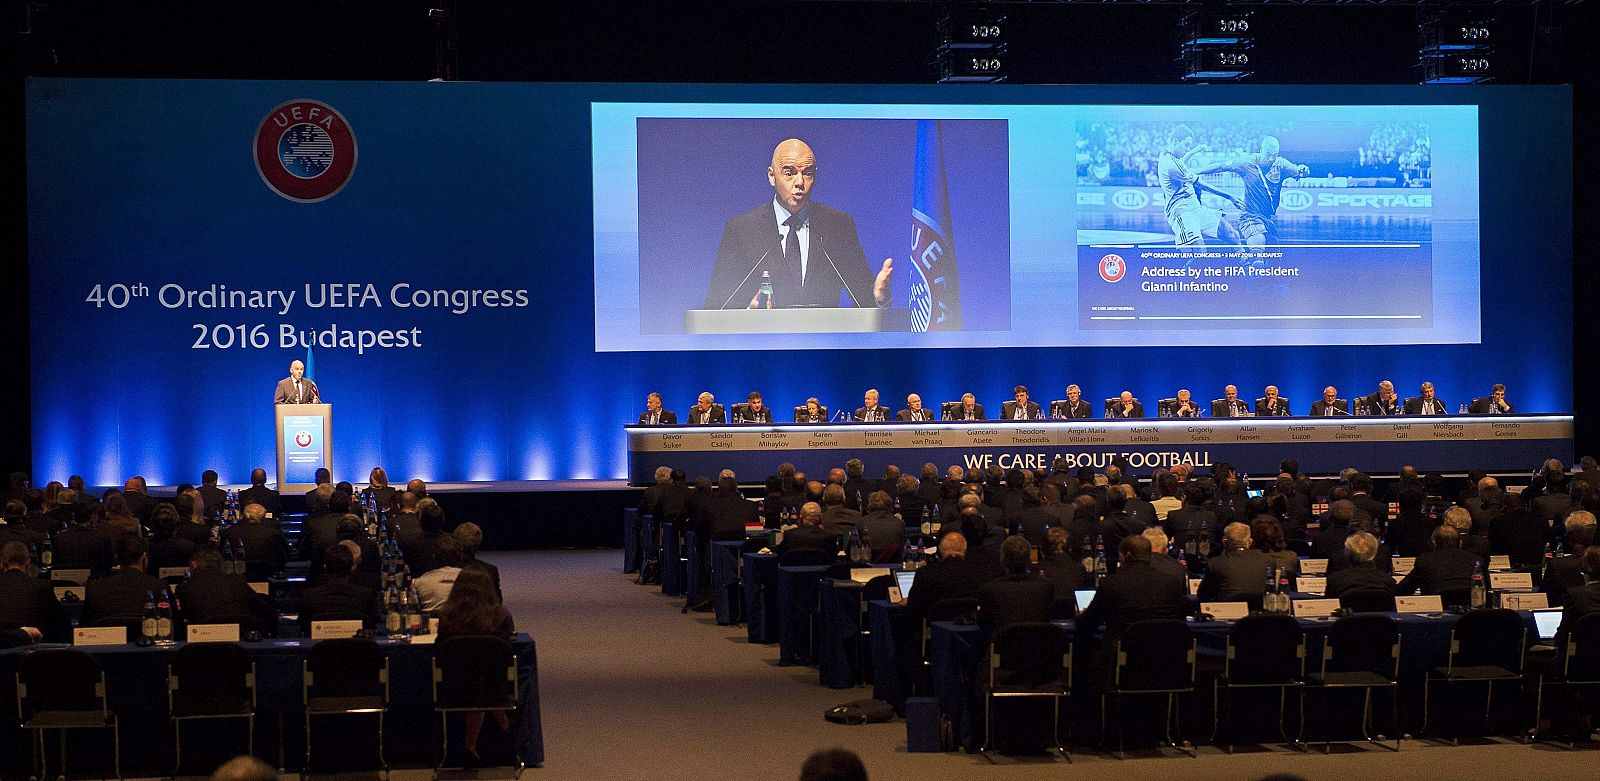 Vista general del 40º Congreso Ordinario de la UEFA